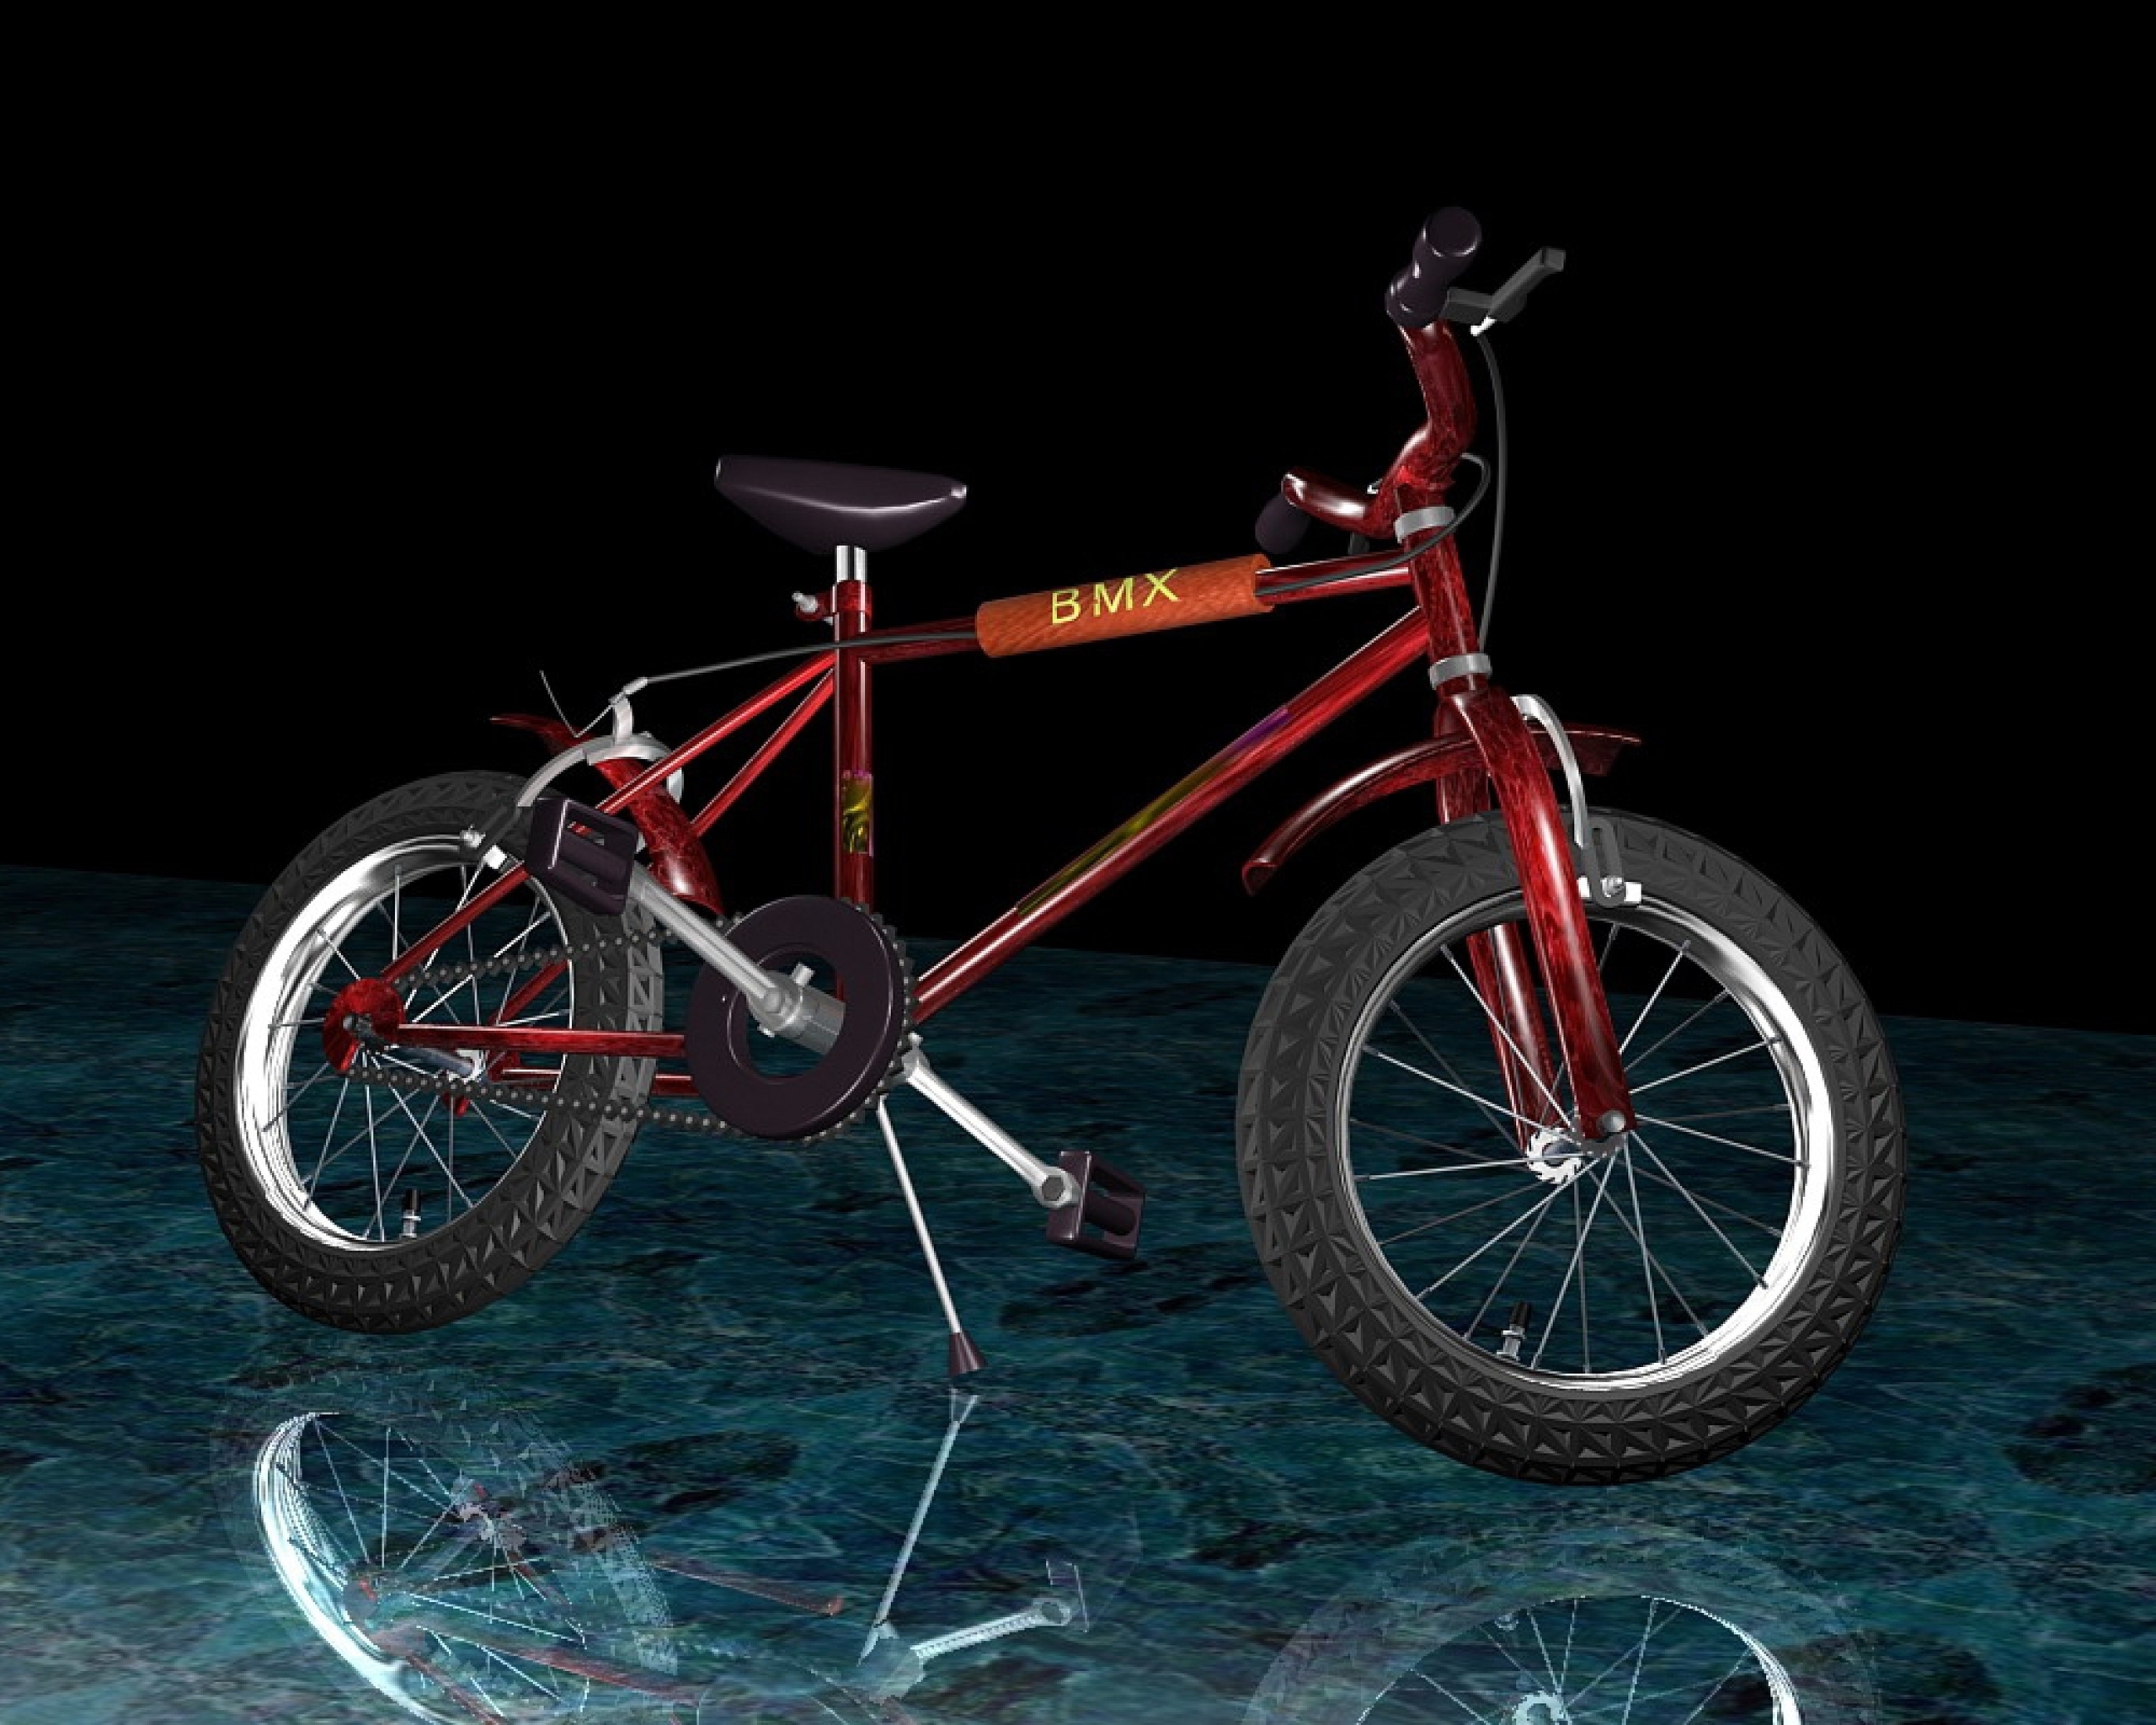 Картинка: Велосипед, 3d, колёса, руль, поверхность, отражение